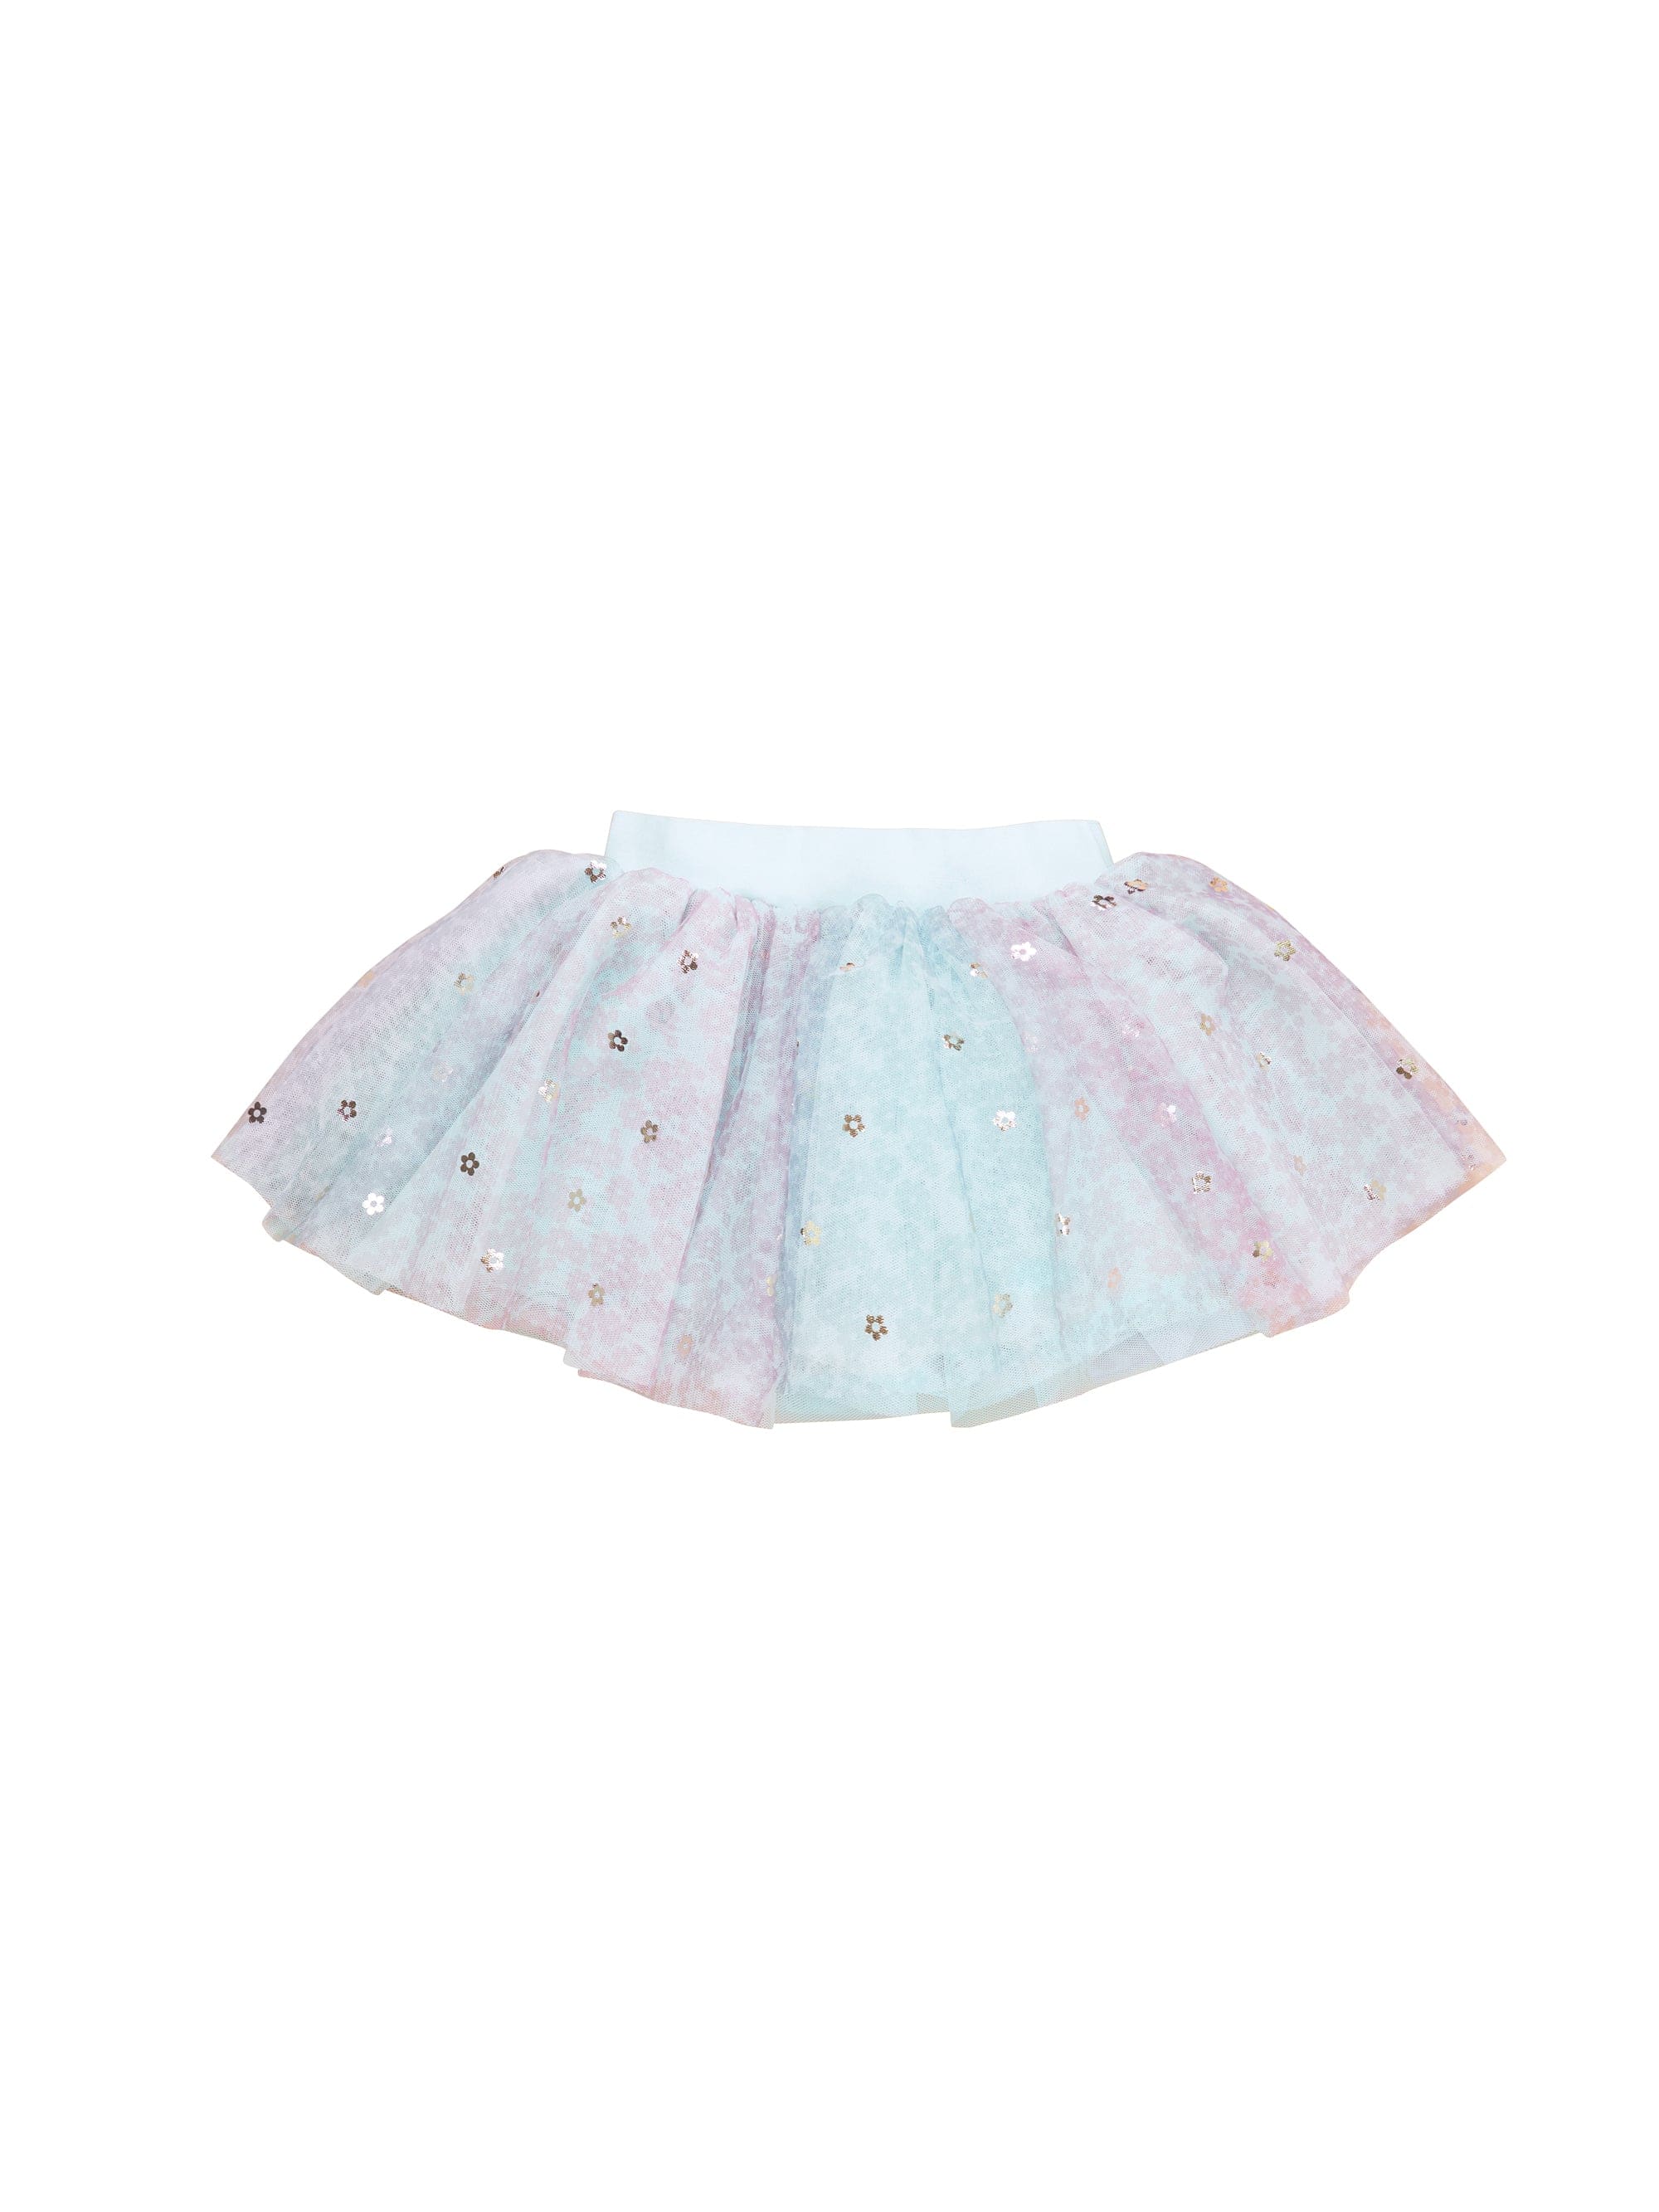 Huxbaby Girls Dress Rainbow Flower Tulle Skirt